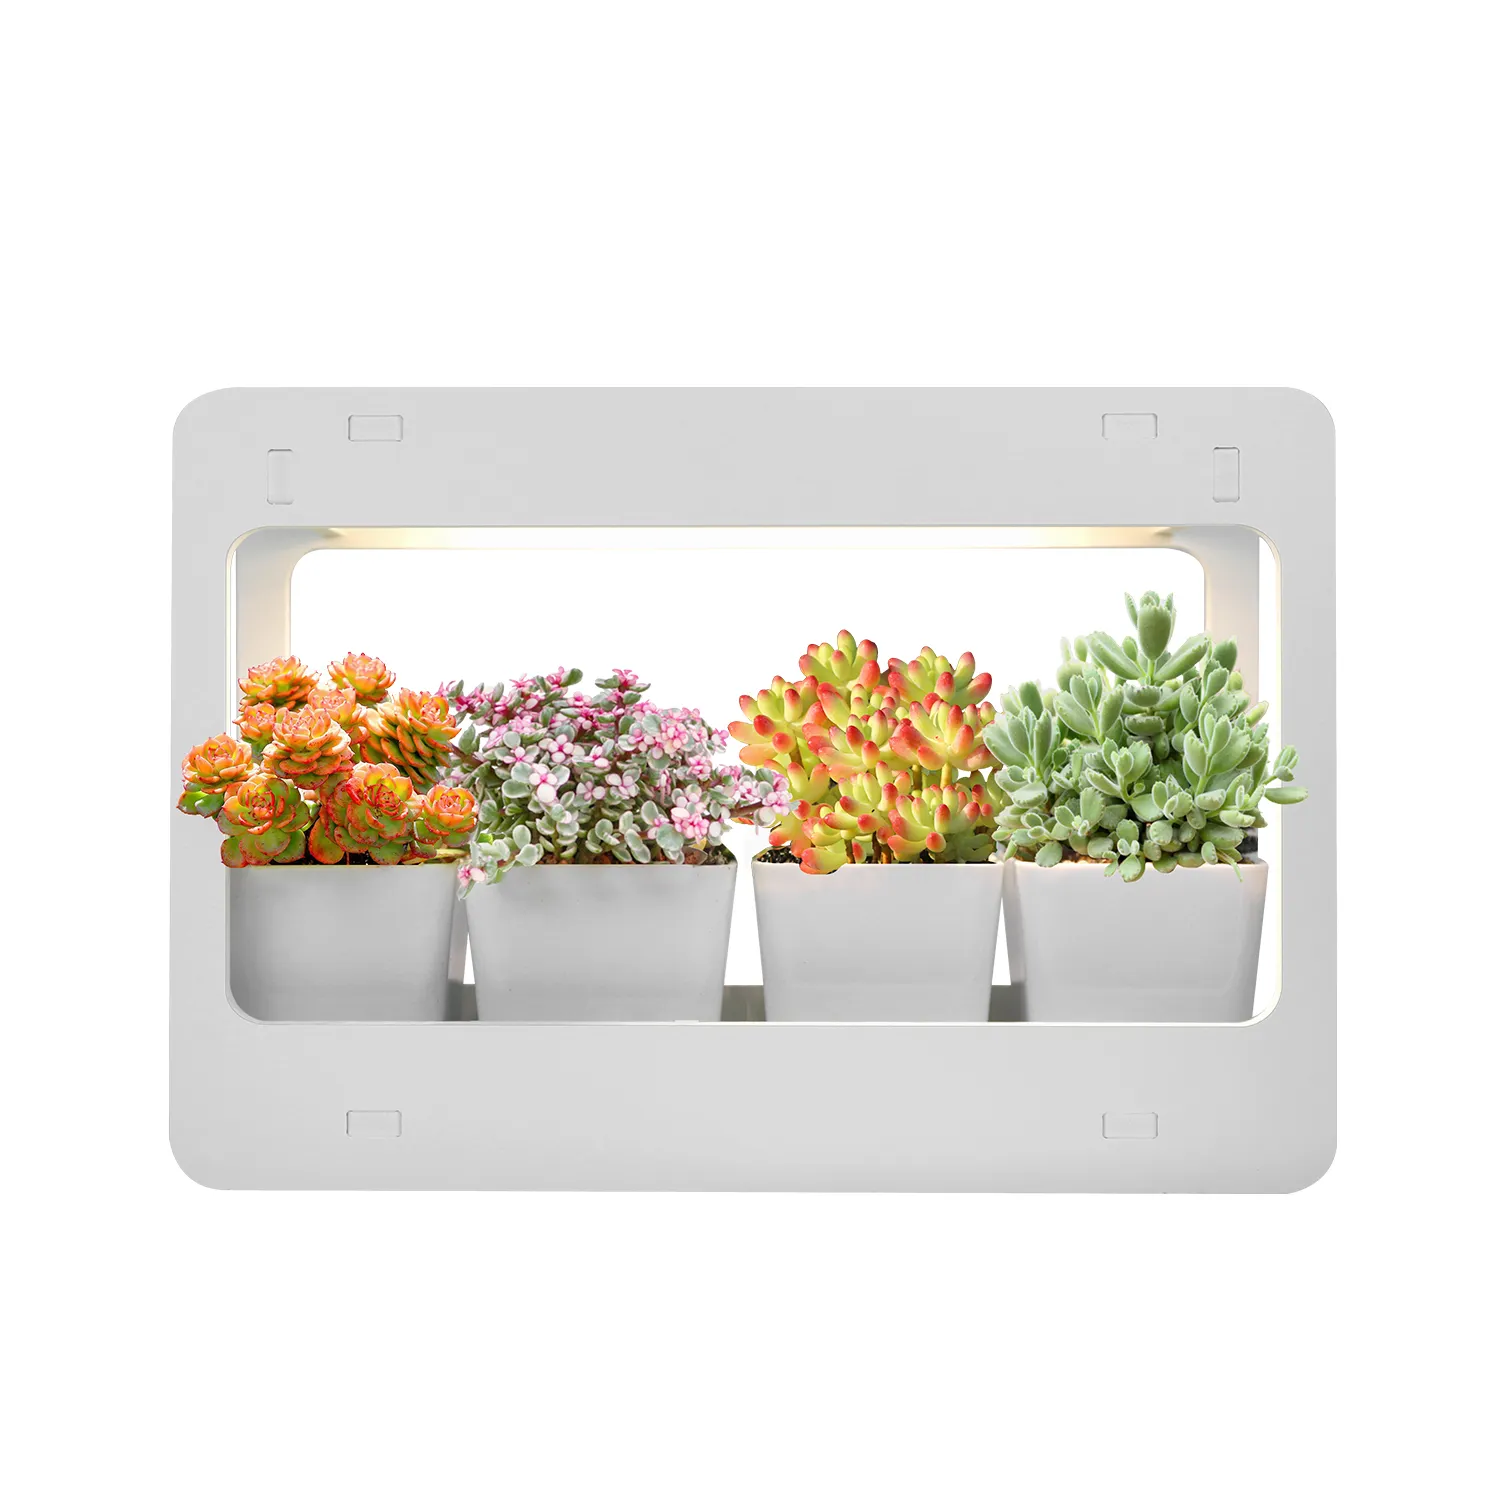 مجموعة أدوات حديقة عشبية منزلية ذاتية الصنع, إضاءة بيضاء لنمو النباتات والزهور مع تشغيل مؤقت